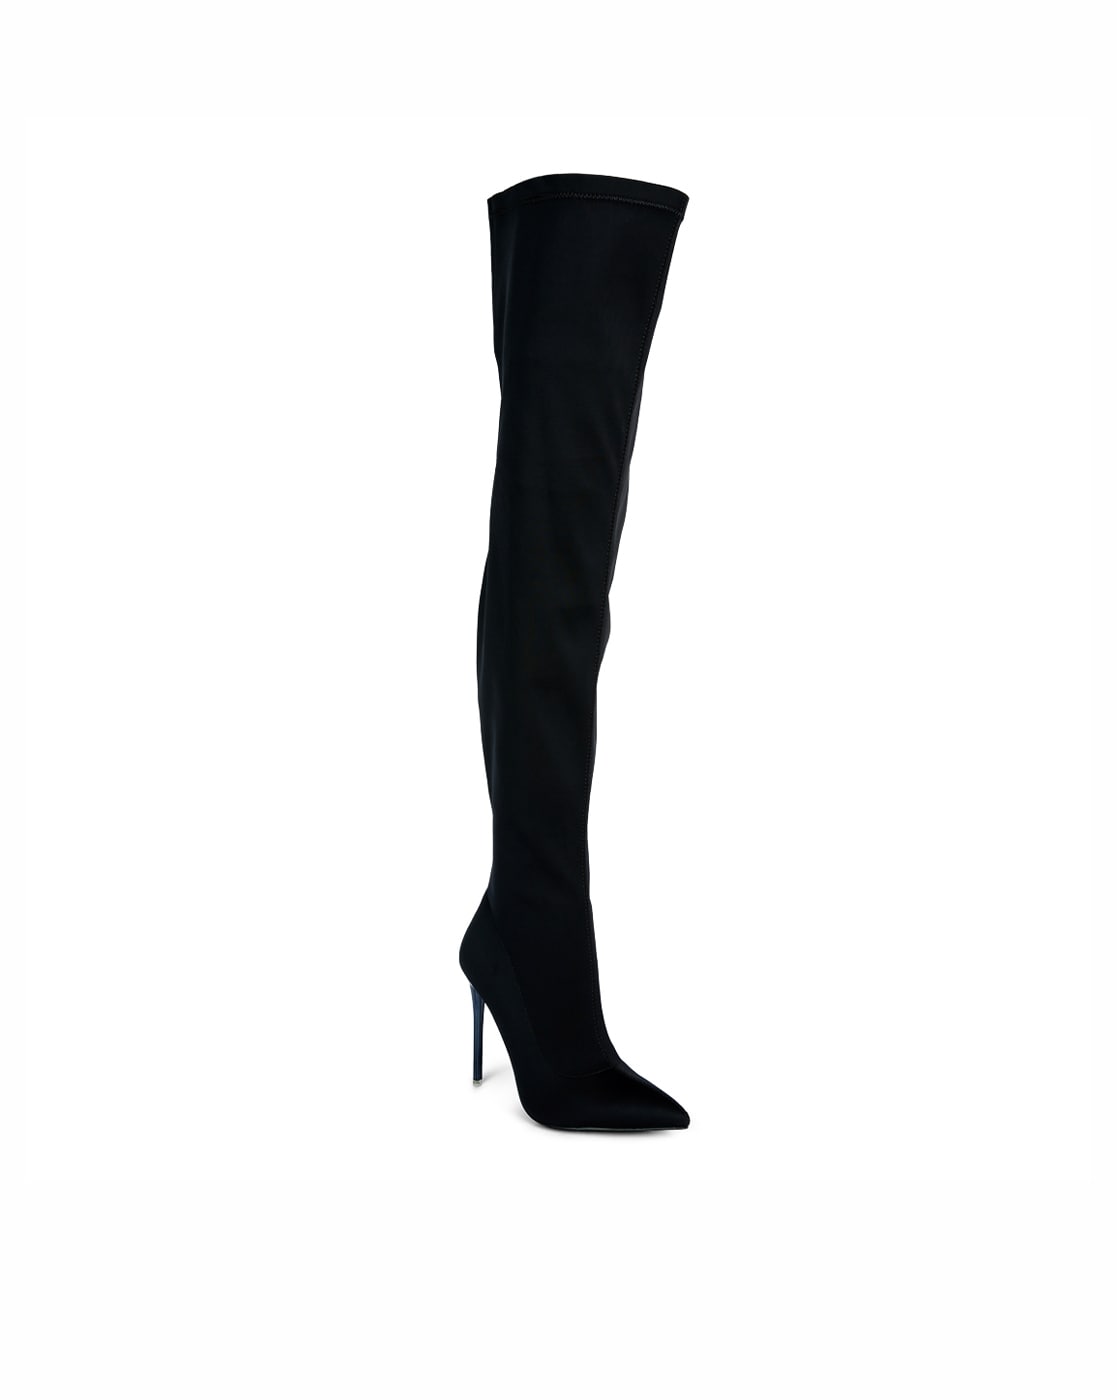 LEAH Black Block Heel Knee High Boot | Women's Boots – Steve Madden